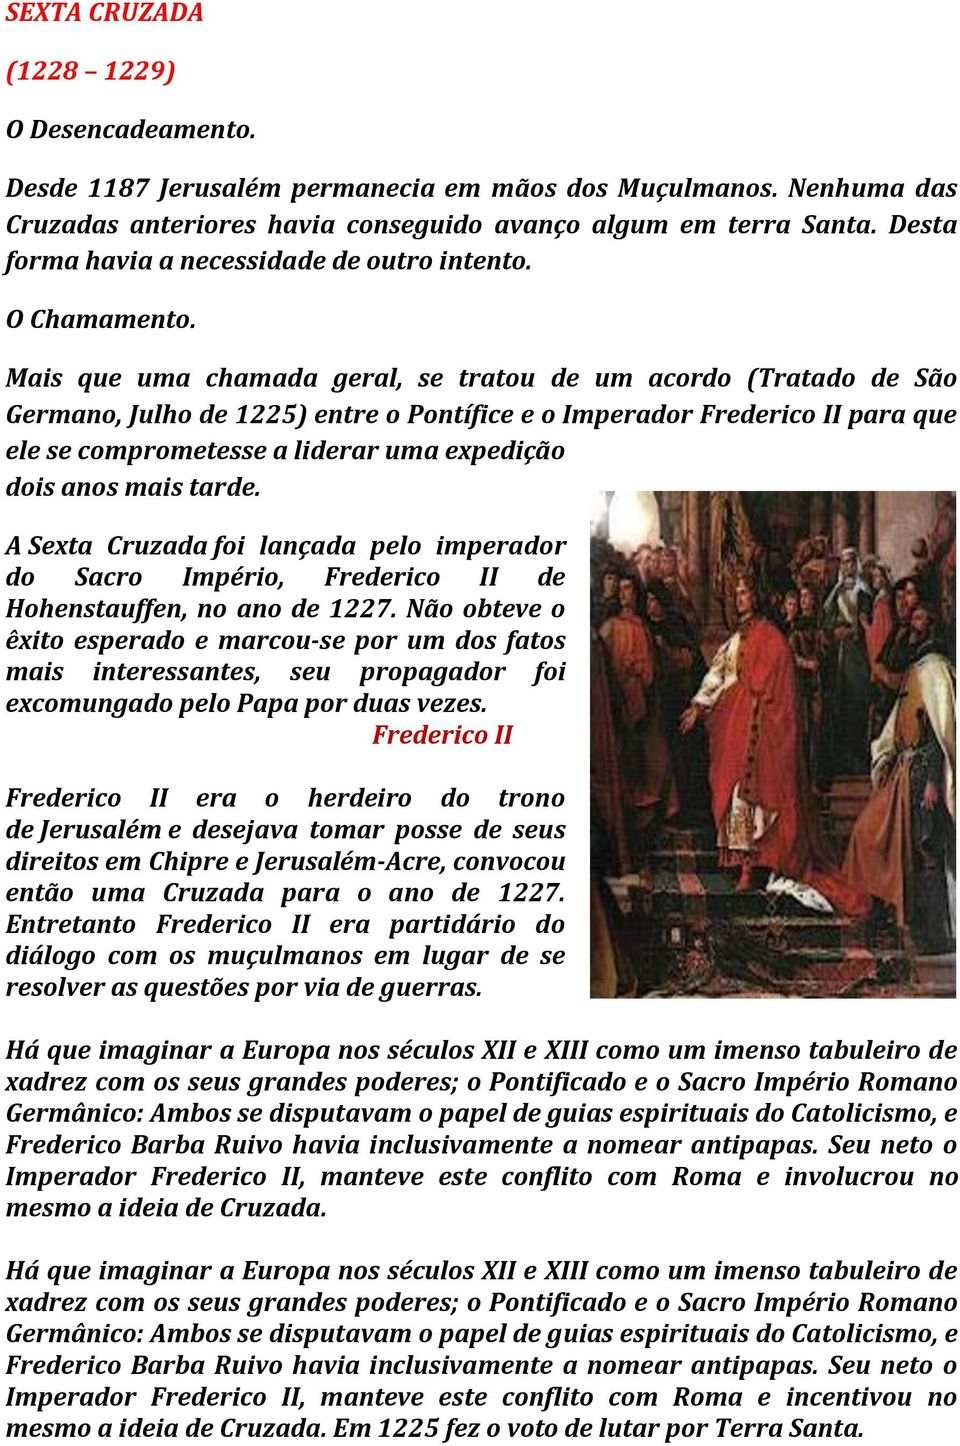 Mais que uma chamada geral, se tratou de um acordo (Tratado de São Germano, Julho de 1225) entre o Pontífice e o Imperador Frederico II para que ele se comprometesse a liderar uma expedição dois anos